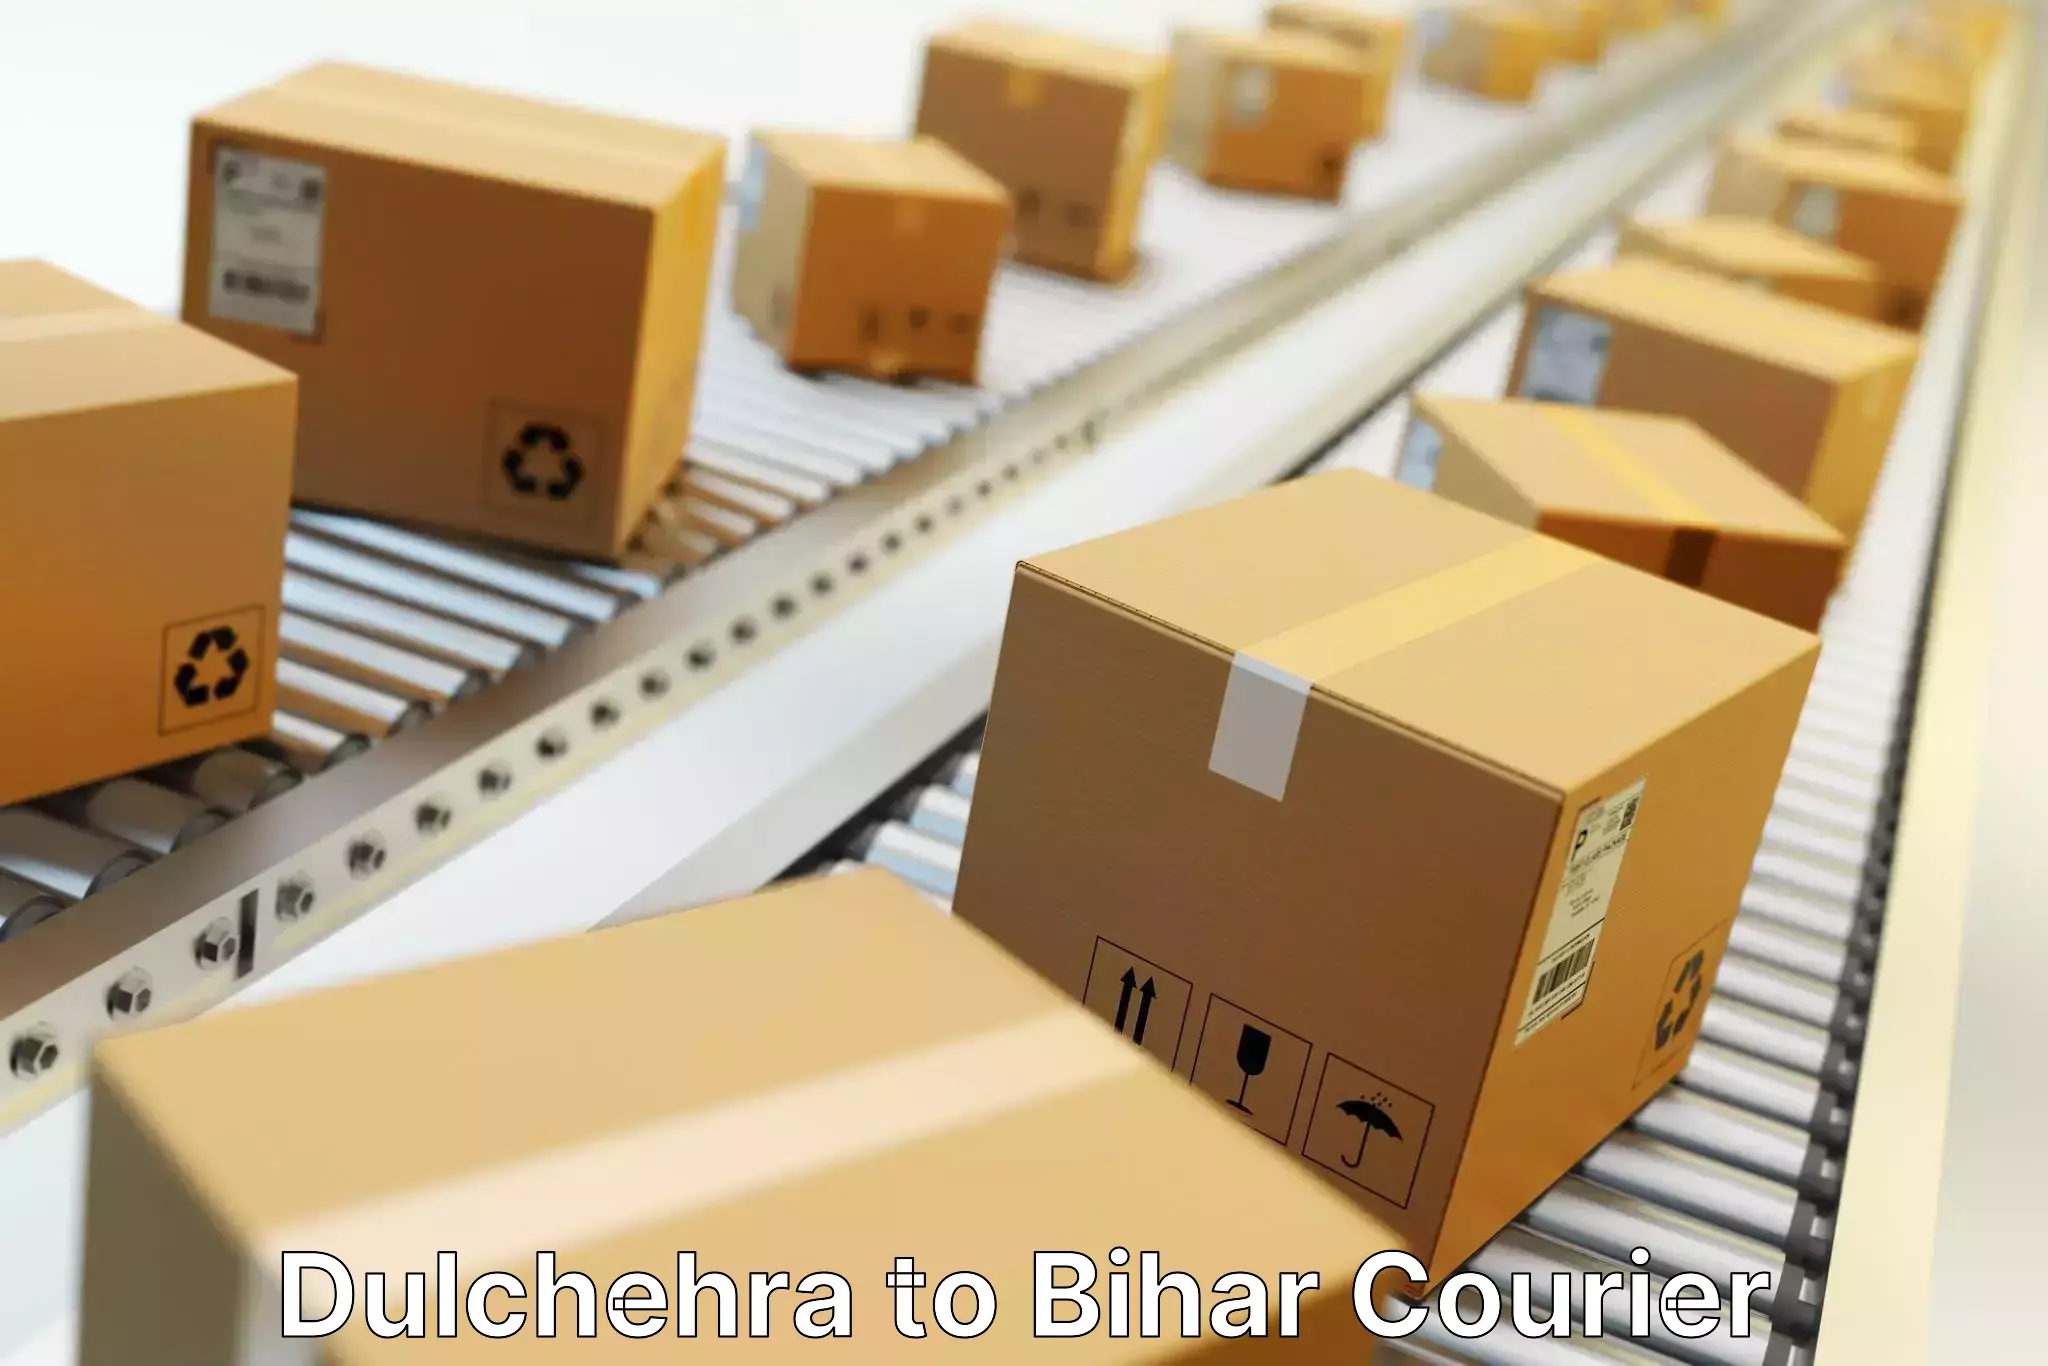 Courier service efficiency Dulchehra to Saraiya